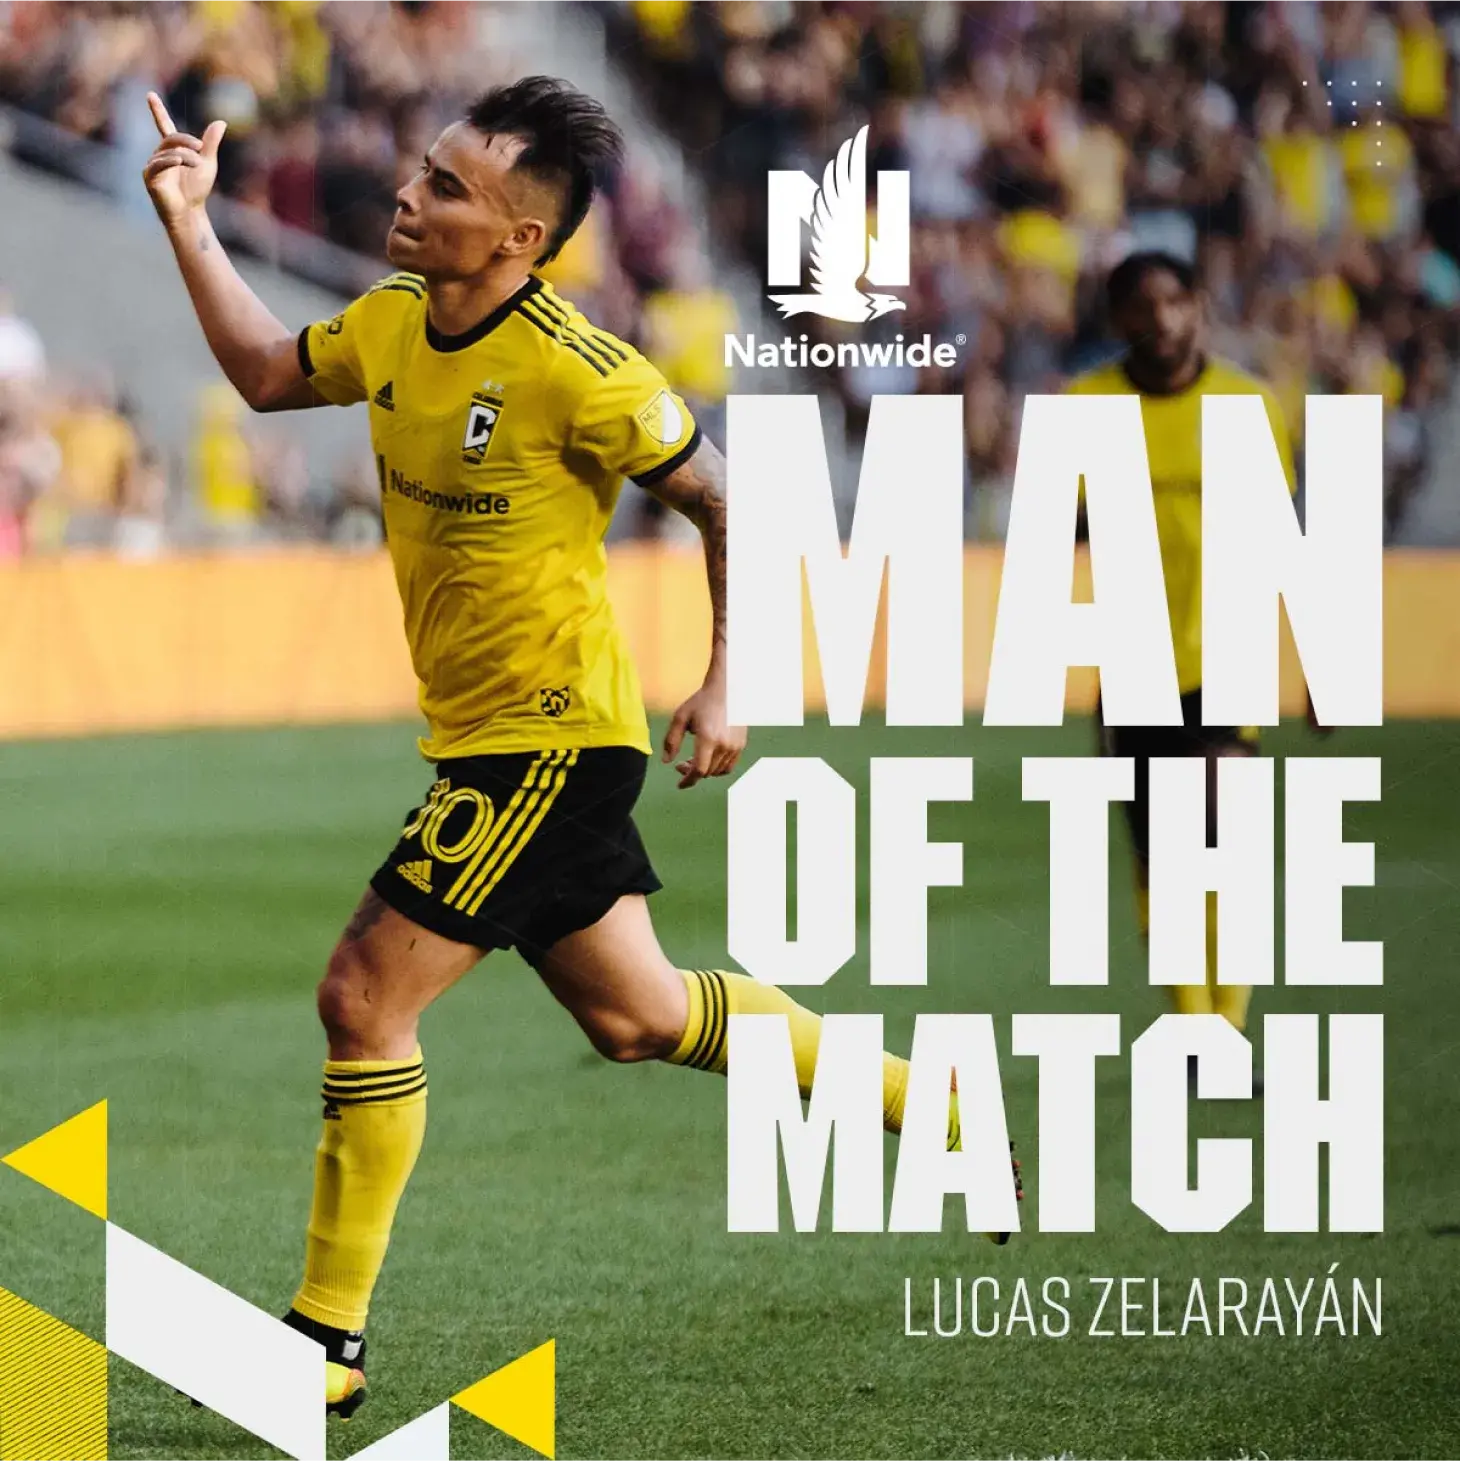 Man of the Match social media post featuring Lucas Zelarayán